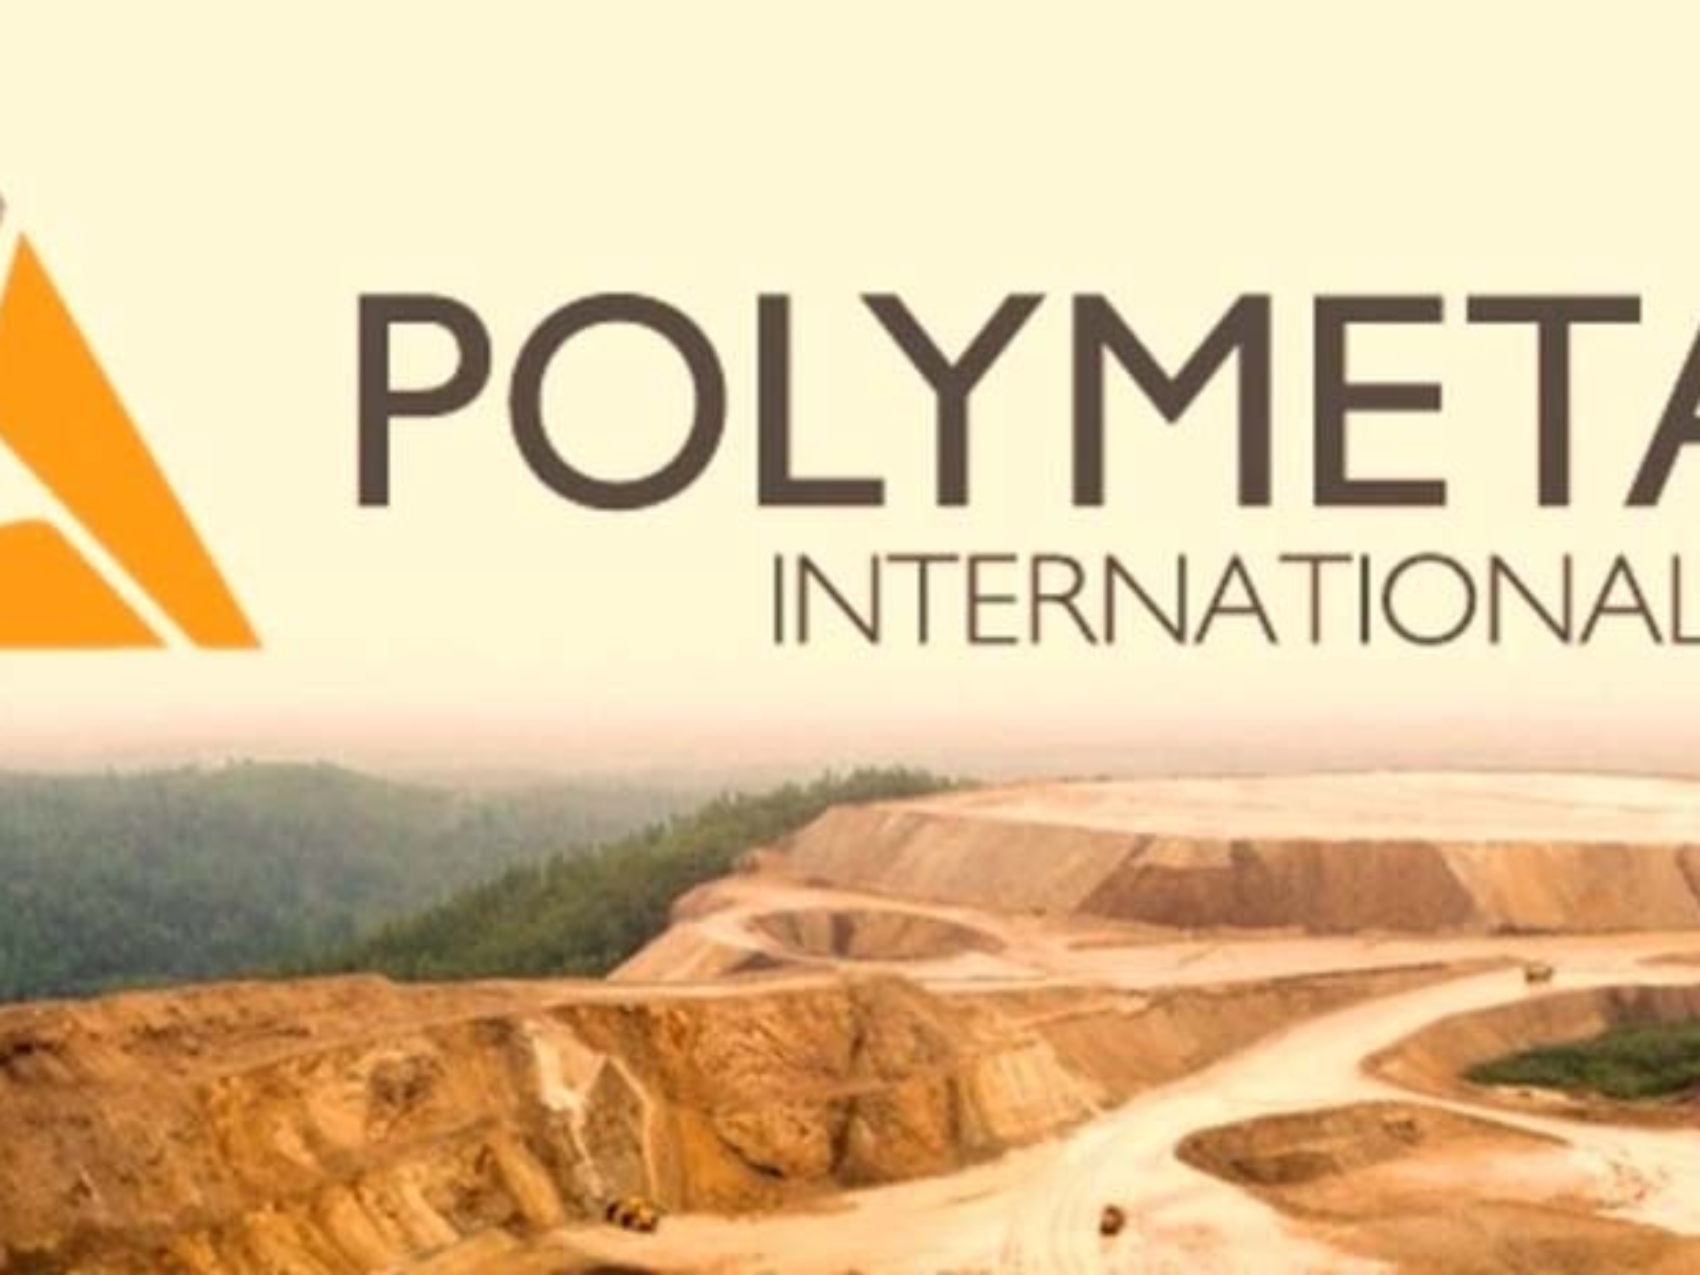 Công ty vàng Polymetal International: nhà khai thác vàng lớn tại Nga